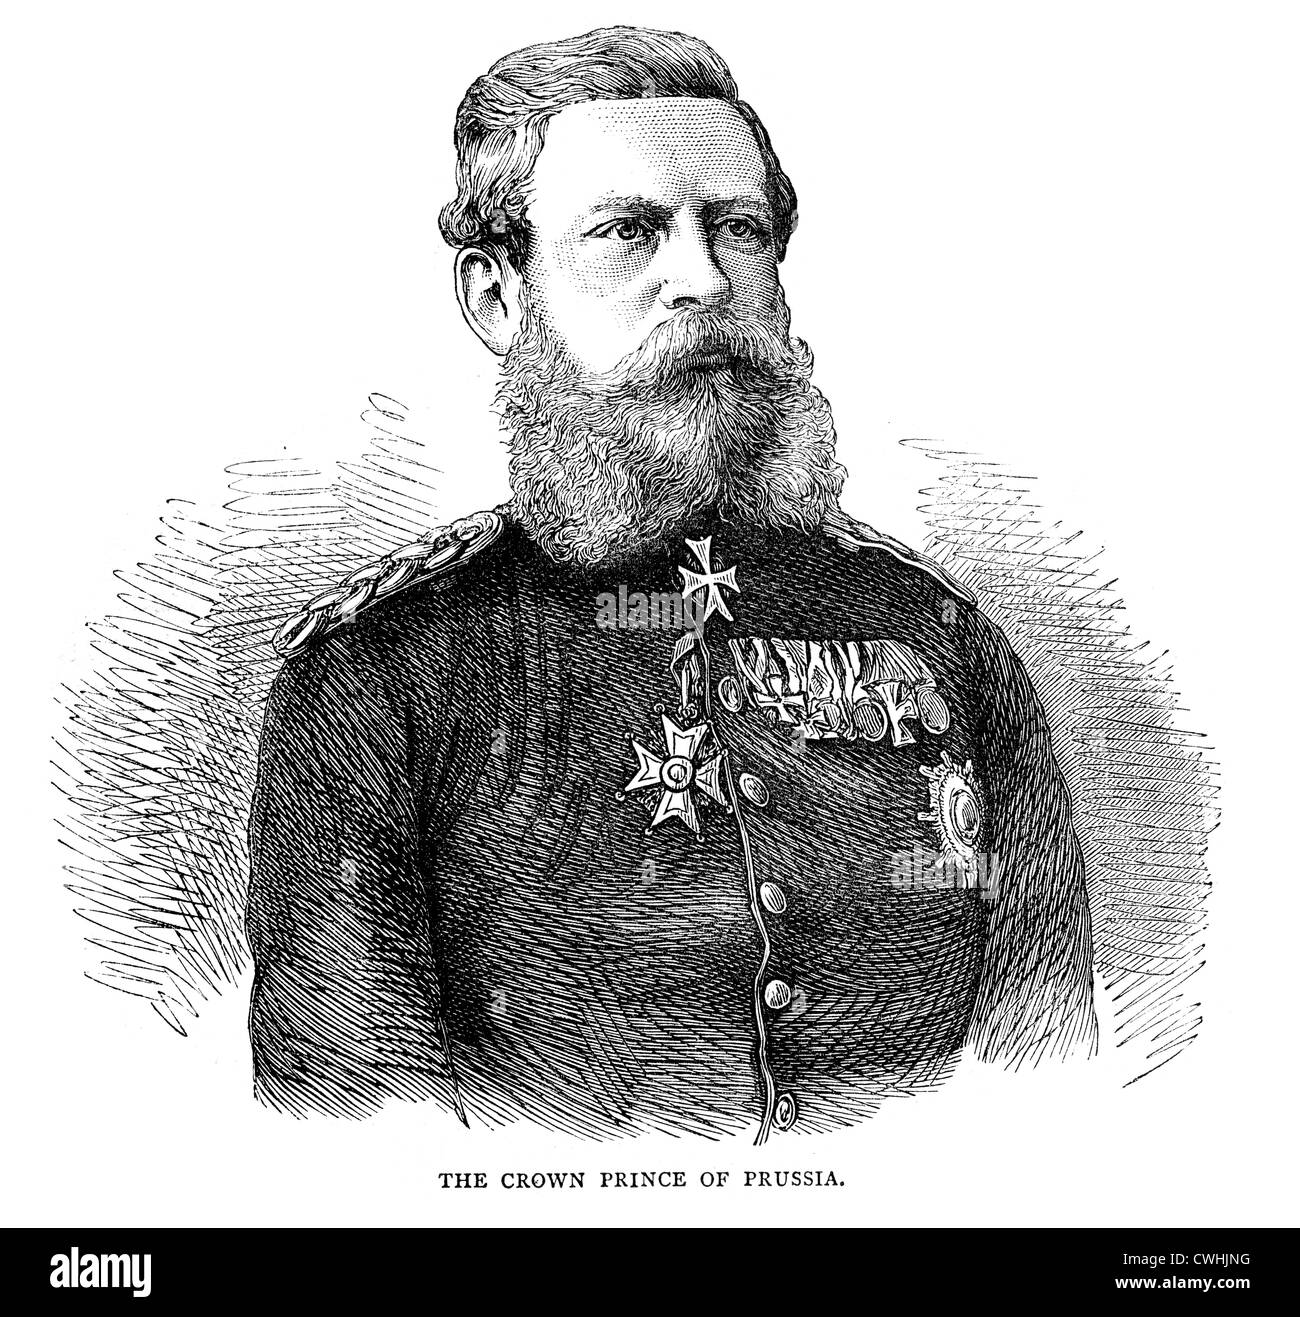 Frederick III (18 octobre 1831 - 15 juin 1888) a été l'empereur allemand et roi de Prusse pour 99 jours en 1888. Banque D'Images